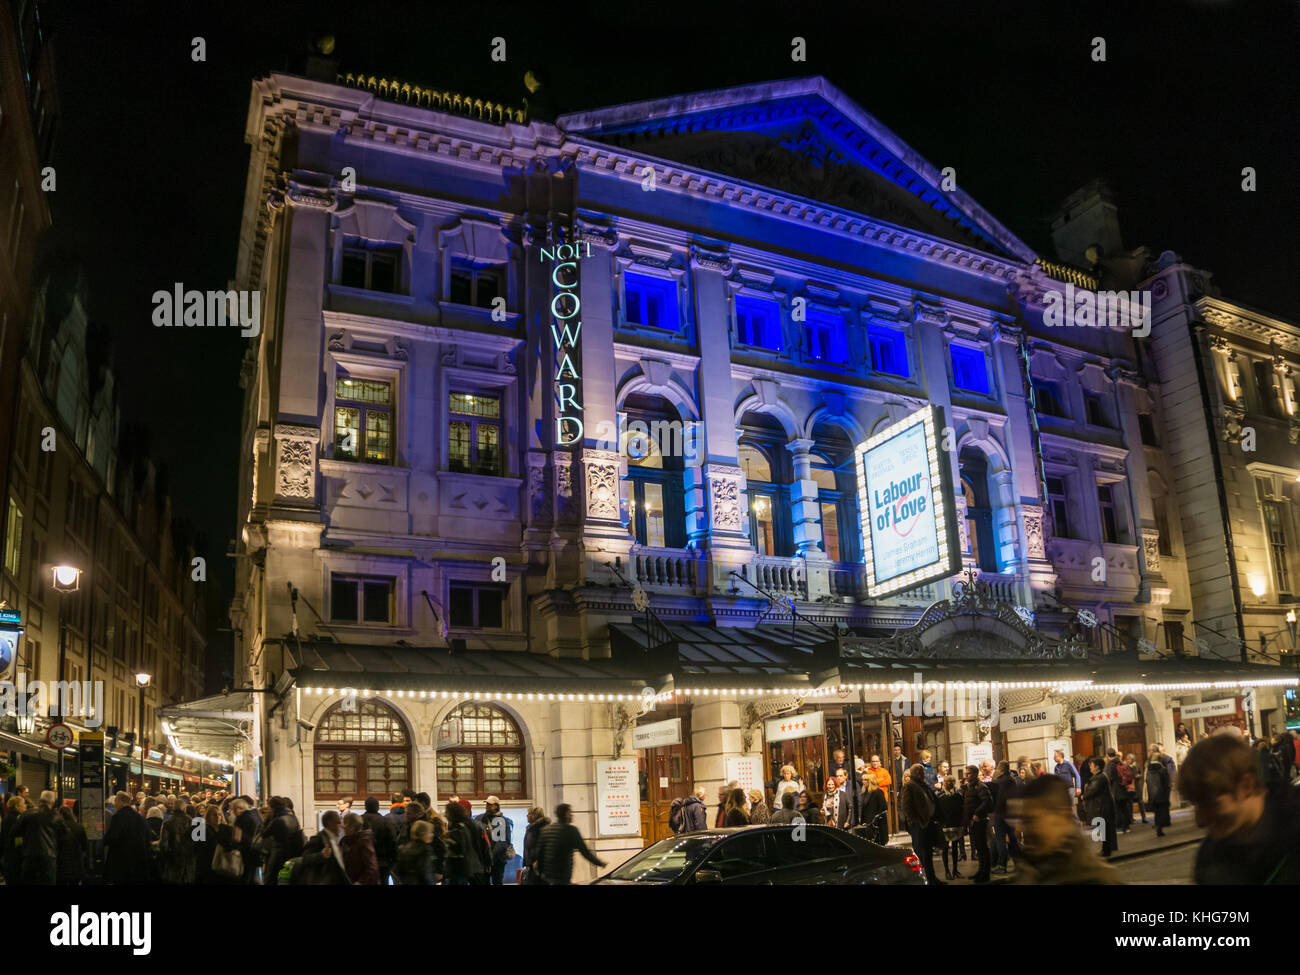 Les gens de quitter le Noel Coward Theatre à st martin's lane dans la nuit dans le West End de Londres Banque D'Images